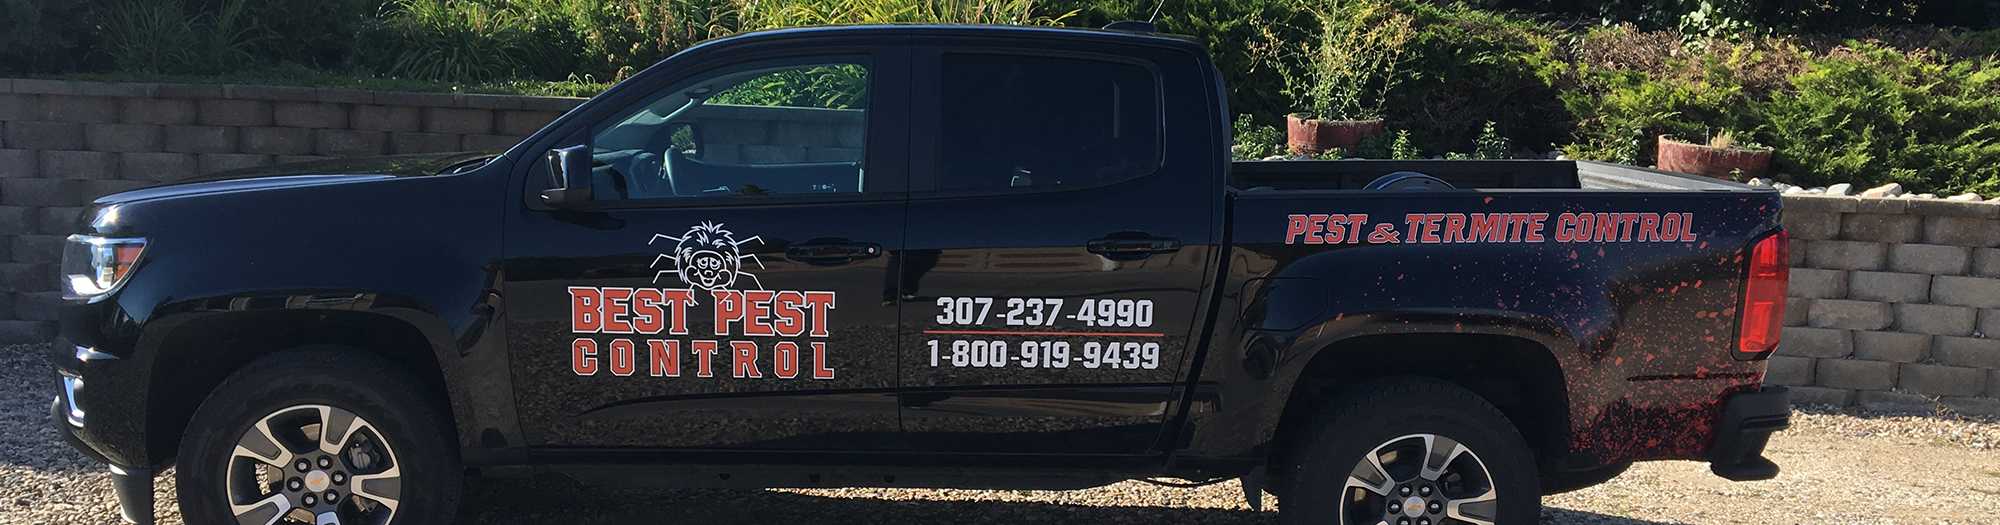 Work truck Best Pest Control Casper WY